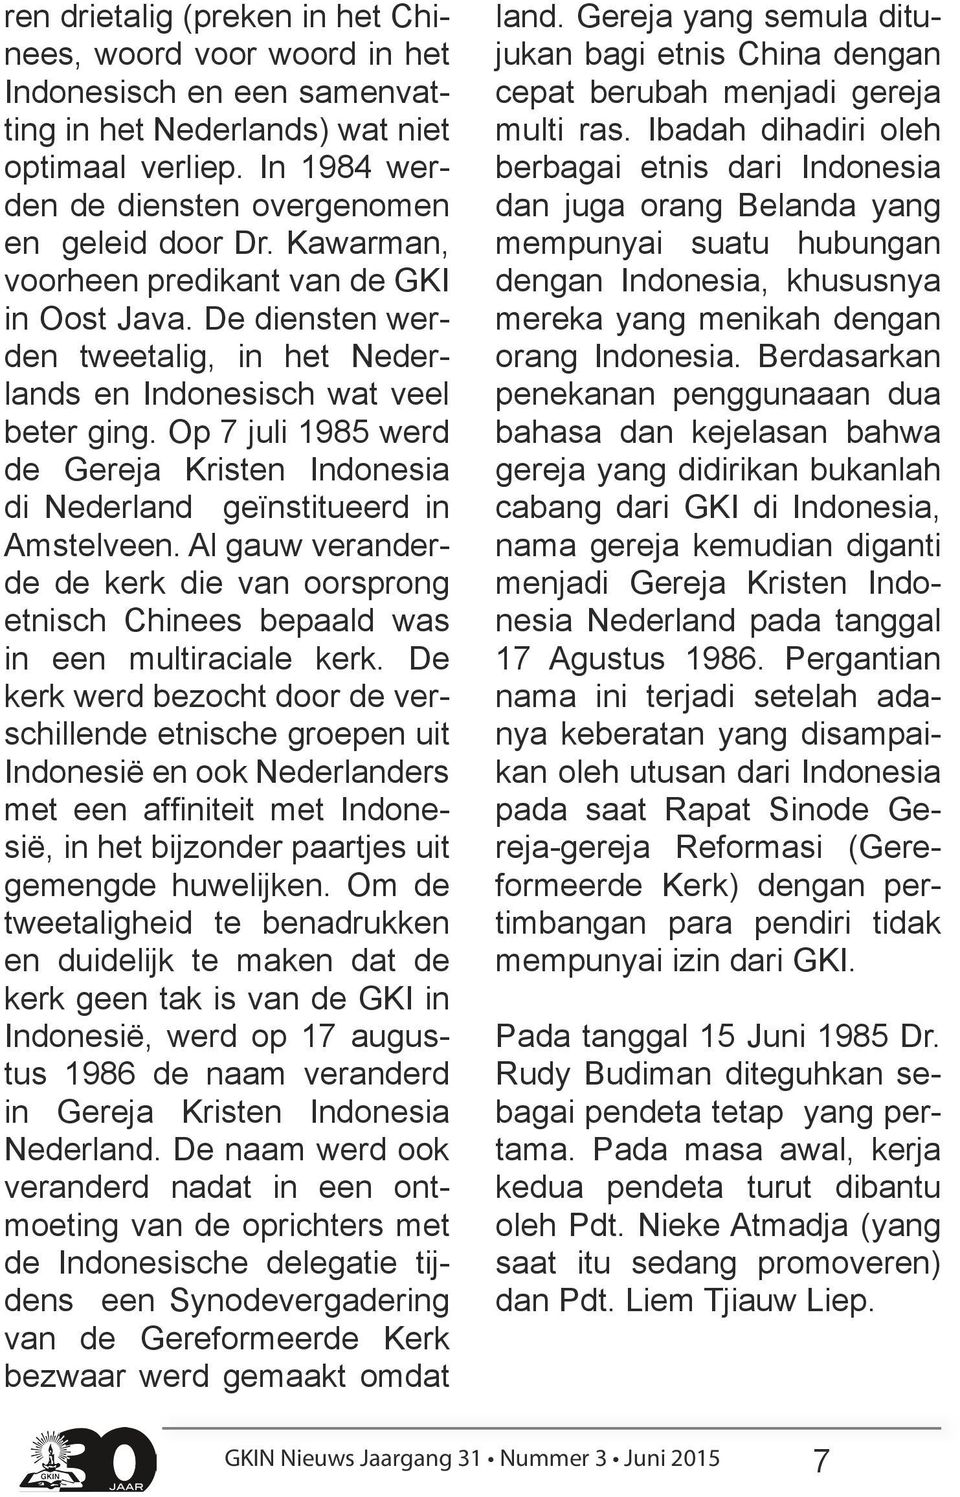 Op 7 juli 1985 werd de Gereja Kristen Indonesia di Nederland geïnstitueerd in Amstelveen. Al gauw veranderde de kerk die van oorsprong etnisch Chinees bepaald was in een multiraciale kerk.